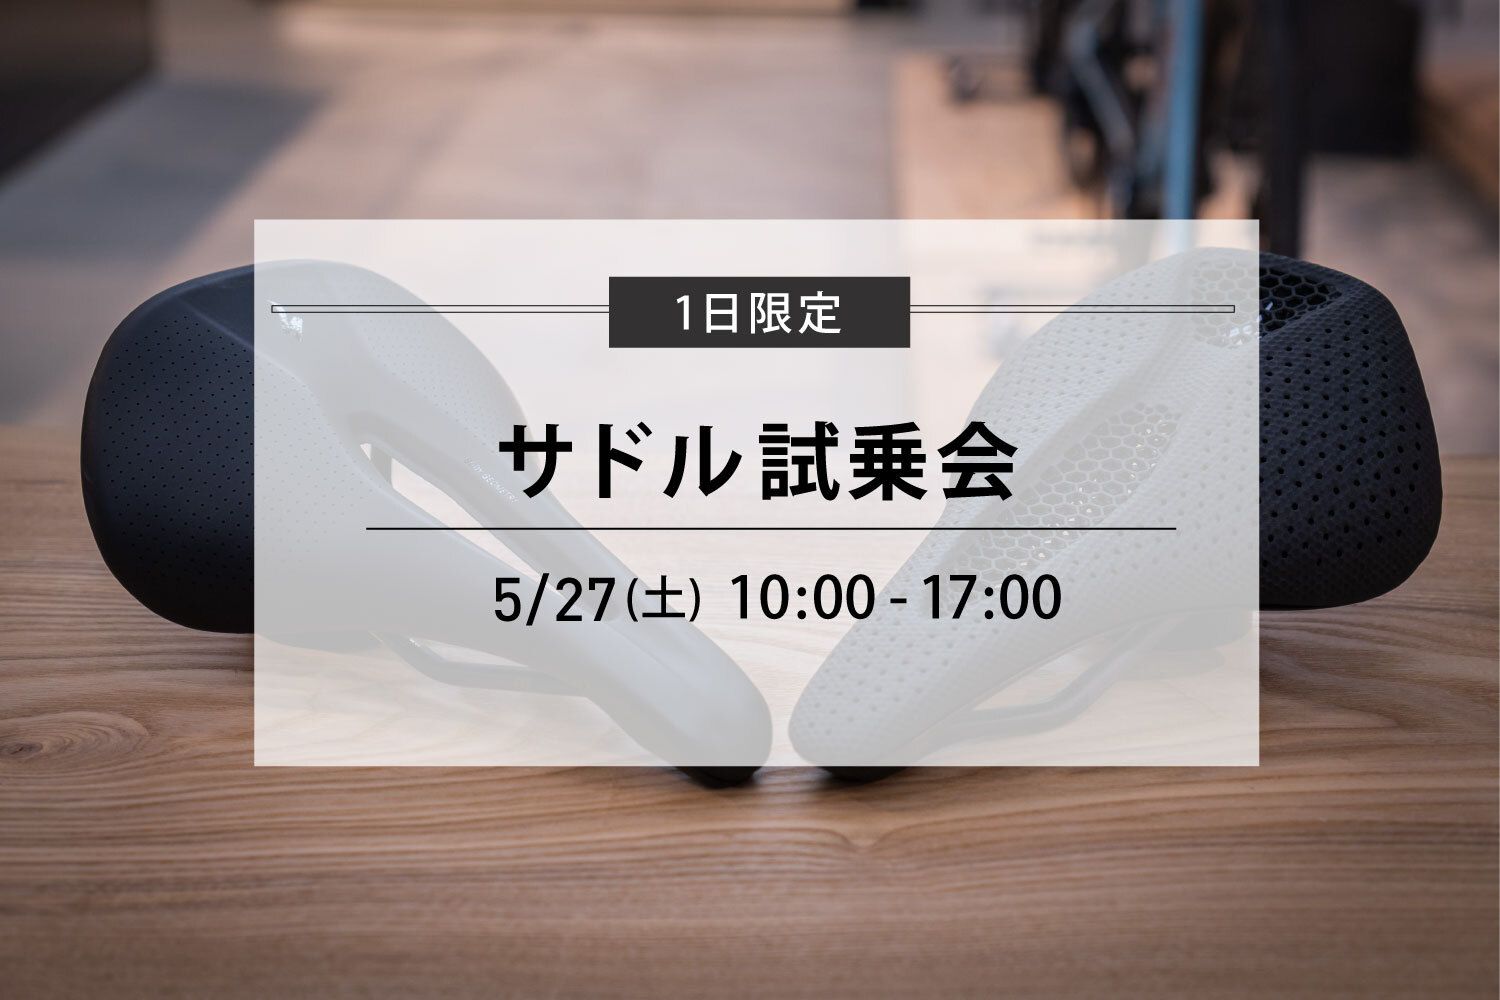 5/27(土)【1day限定 サドル試乗会】のお知らせ